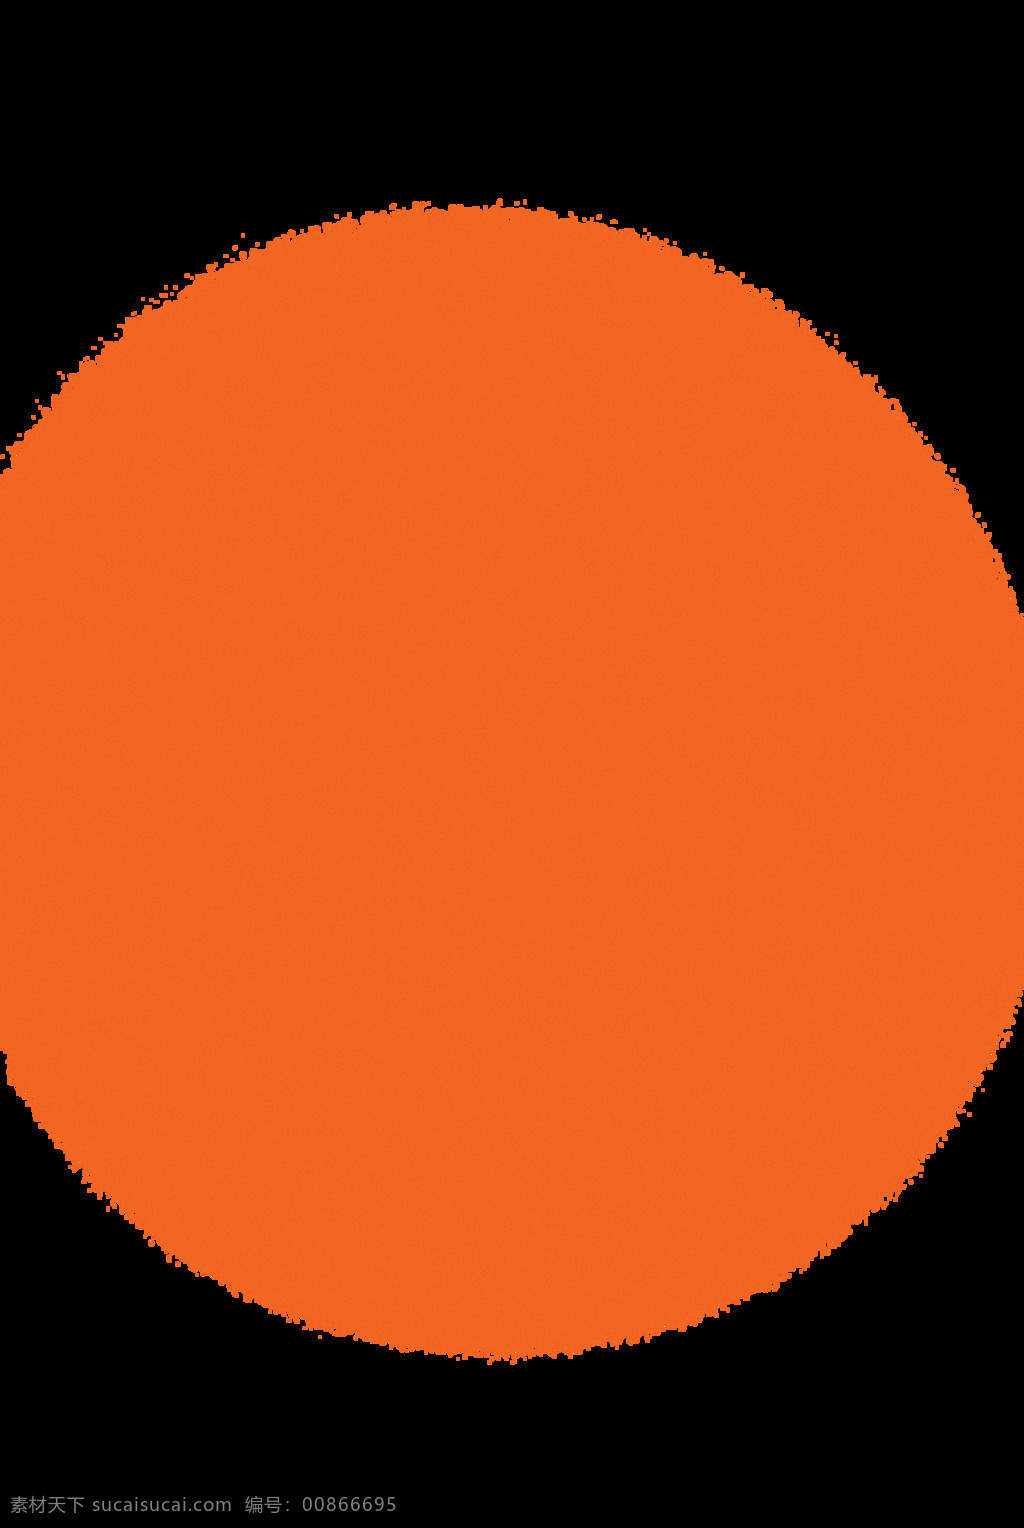 橙色 圆形 光晕 效果 免 抠 透明 橙色圆形背景 橙色圆形图片 橙色圆形元素 颜料元素 渐变 颜色素材 颜料